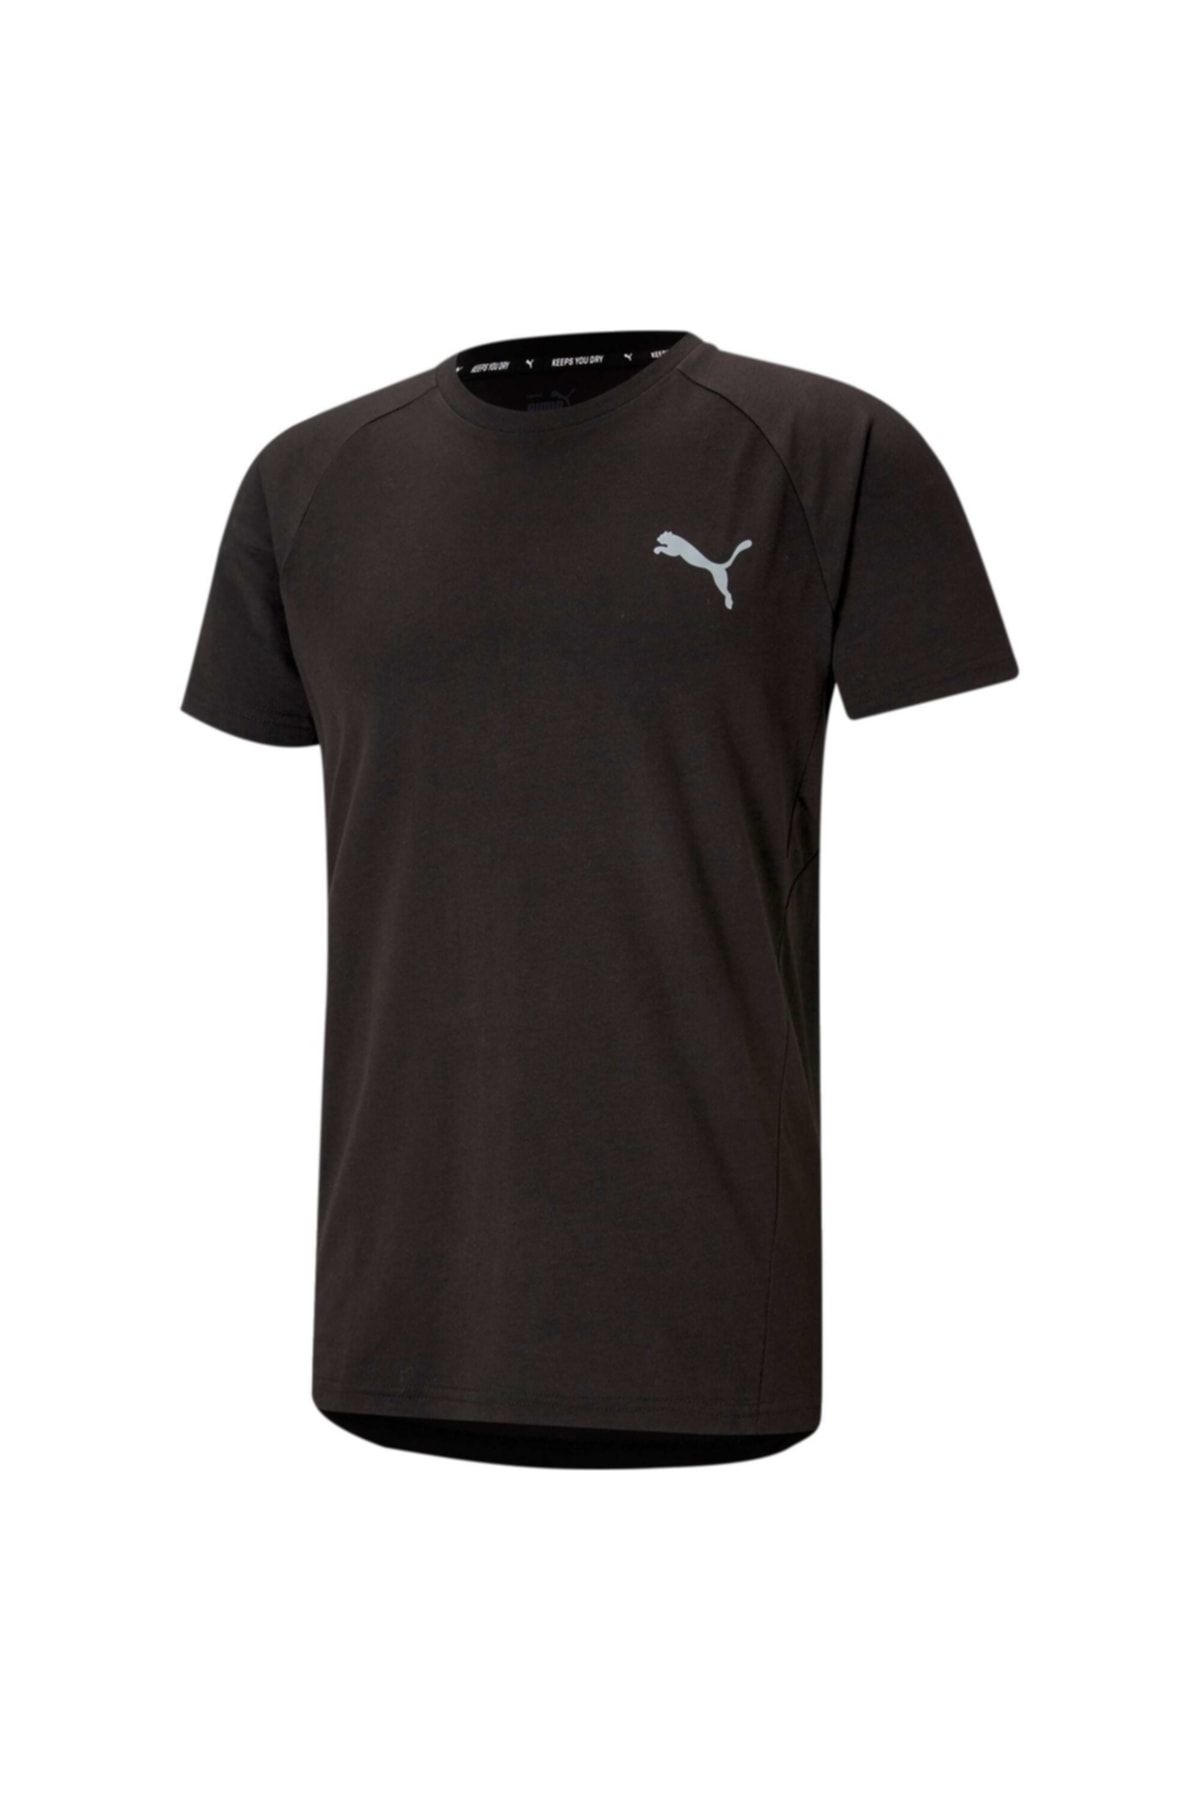 Puma EVOSTRIPE TEE Siyah Erkek T-Shirt 101085385